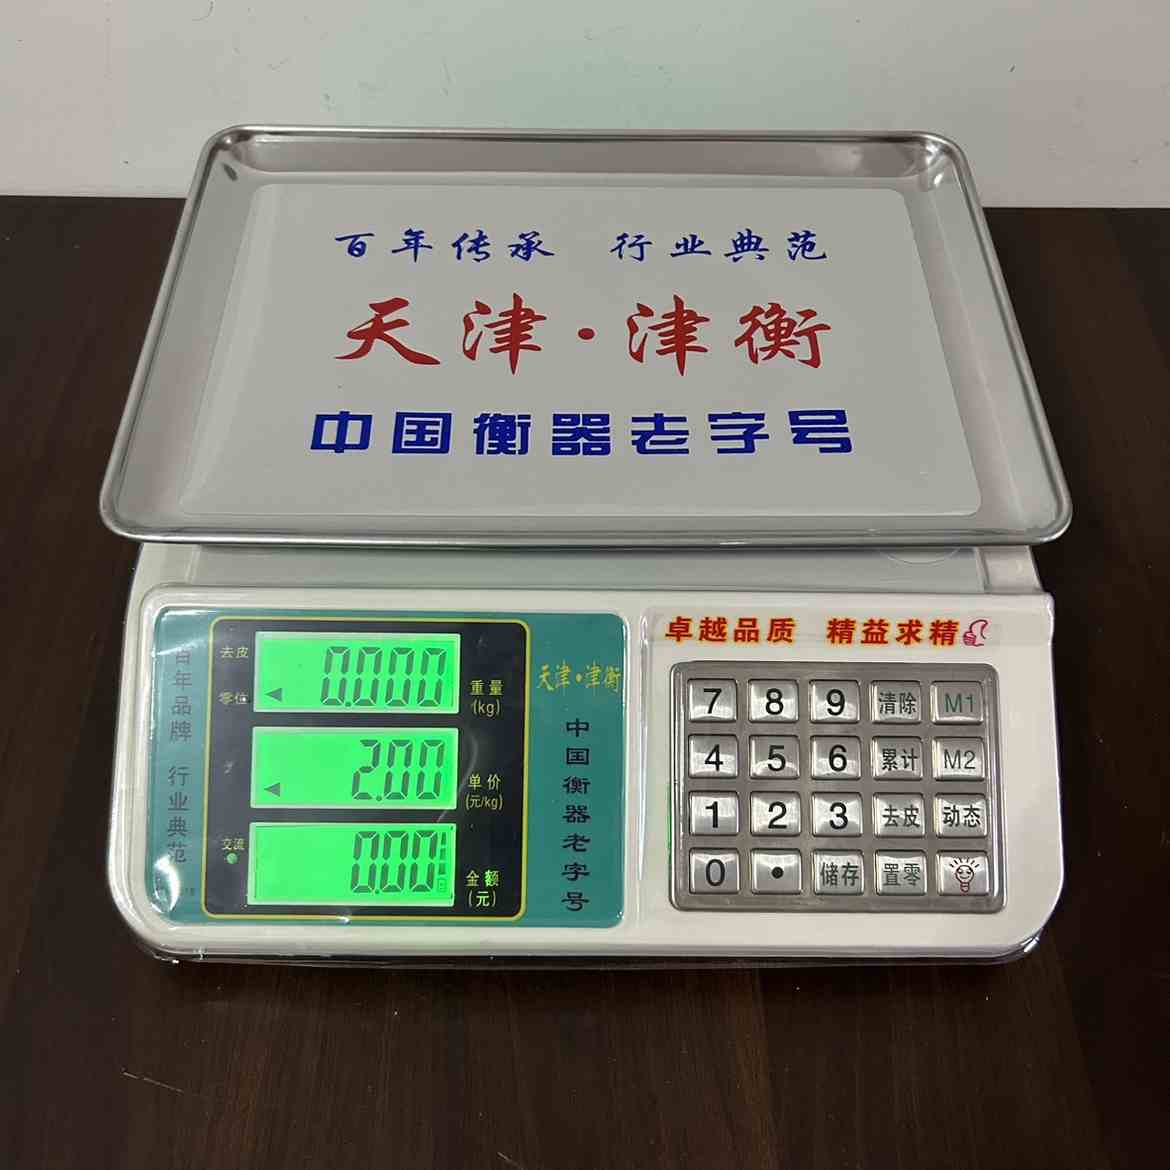 津衡电子称30kg电子秤天津衡器厂电子称计价台秤水果卖菜称重618